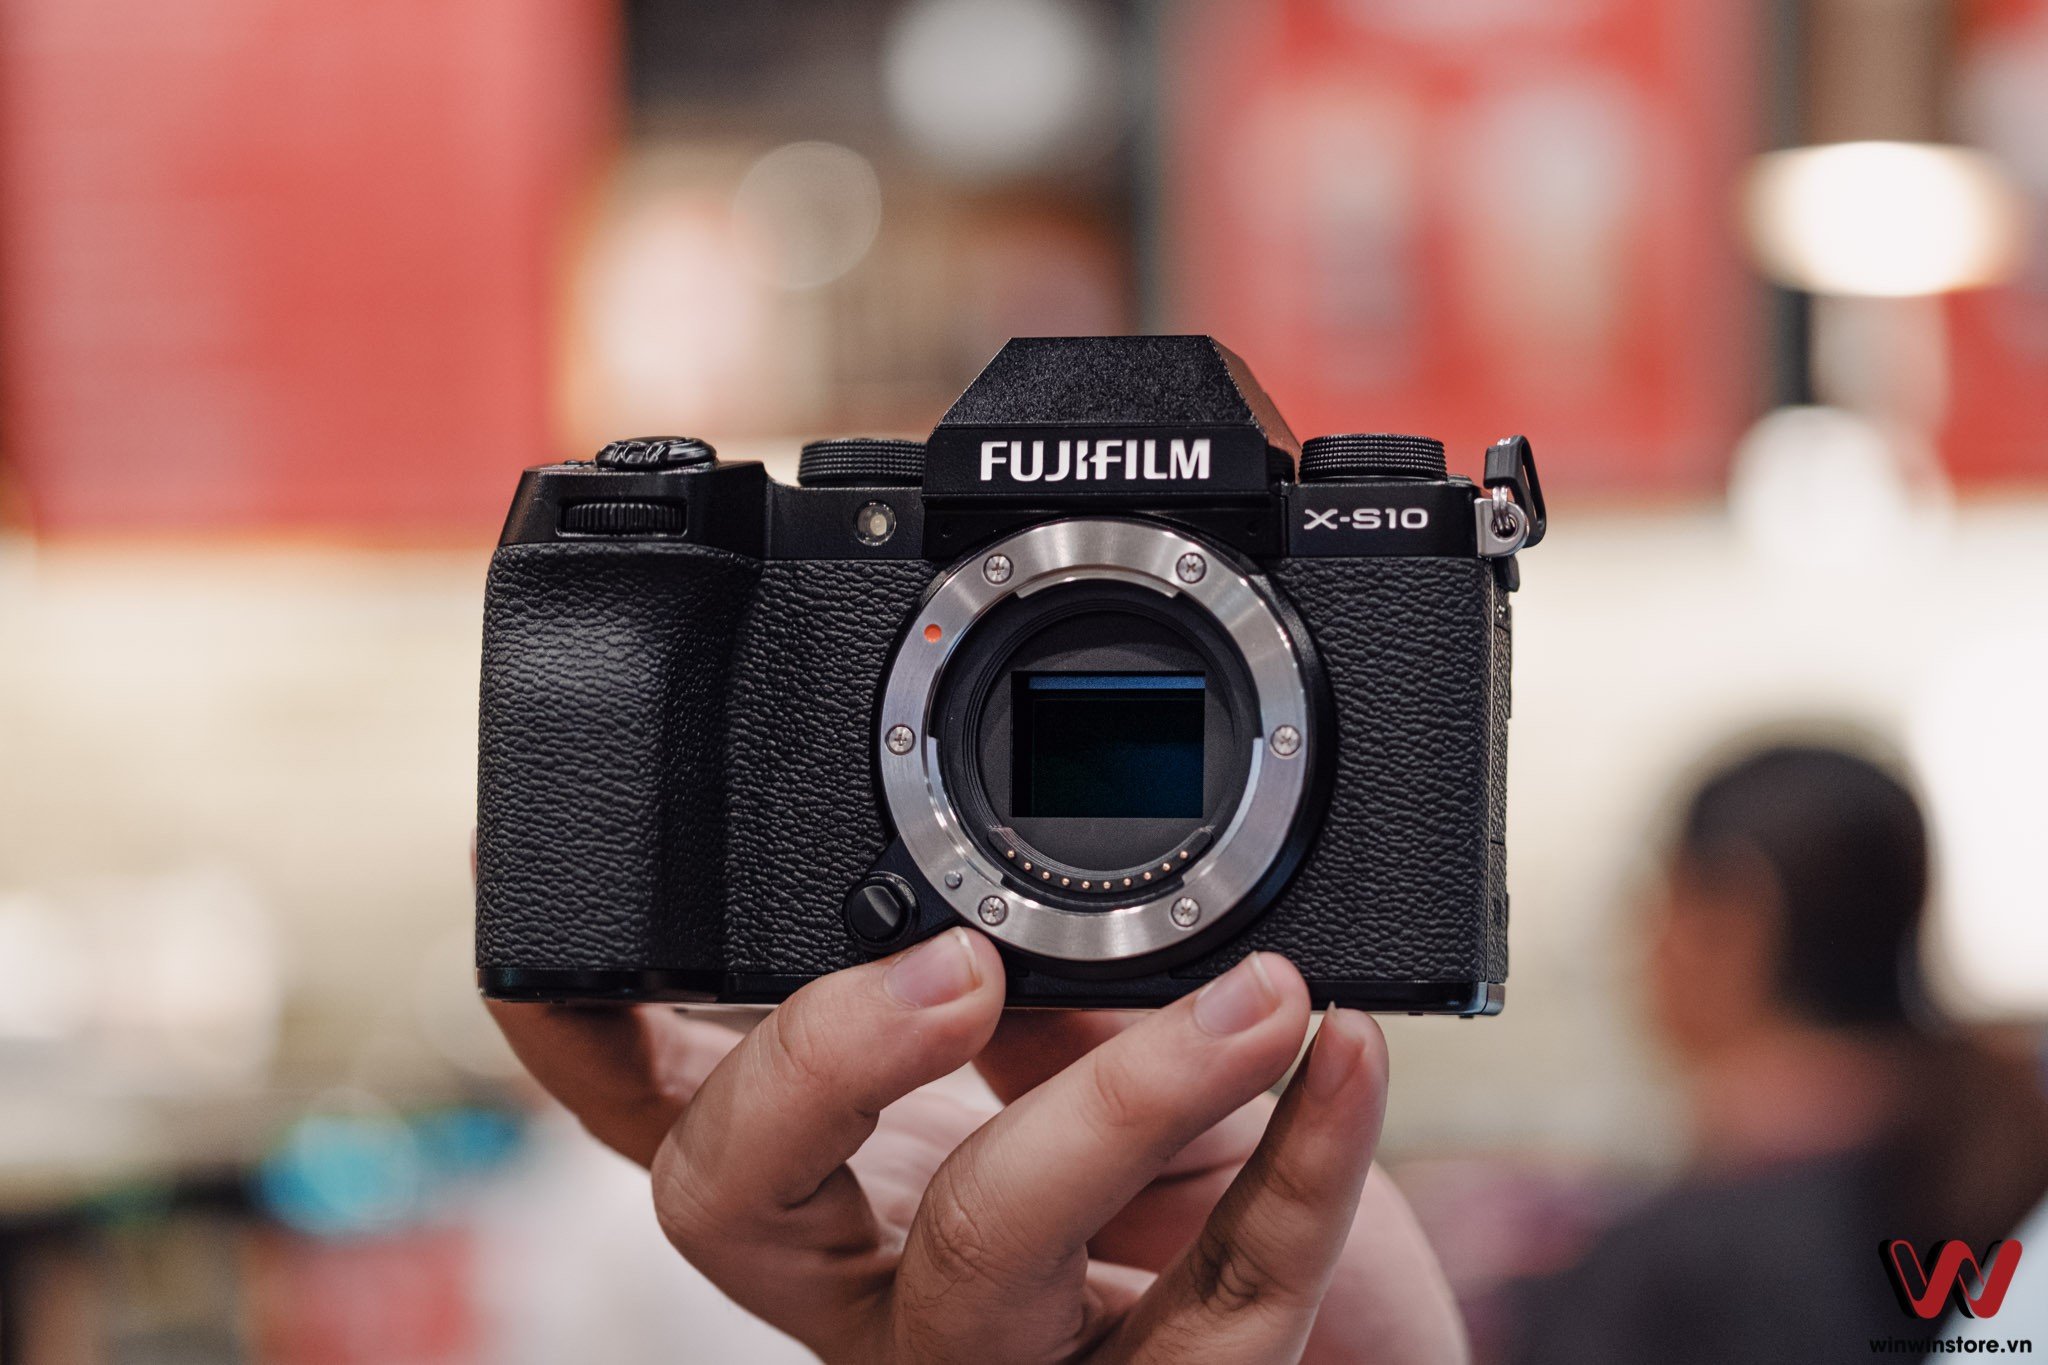 Fujifilm Châu Á - Thái Bình Dương tổ chức cuộc thi ảnh online SOOC với phần quà cực khủng